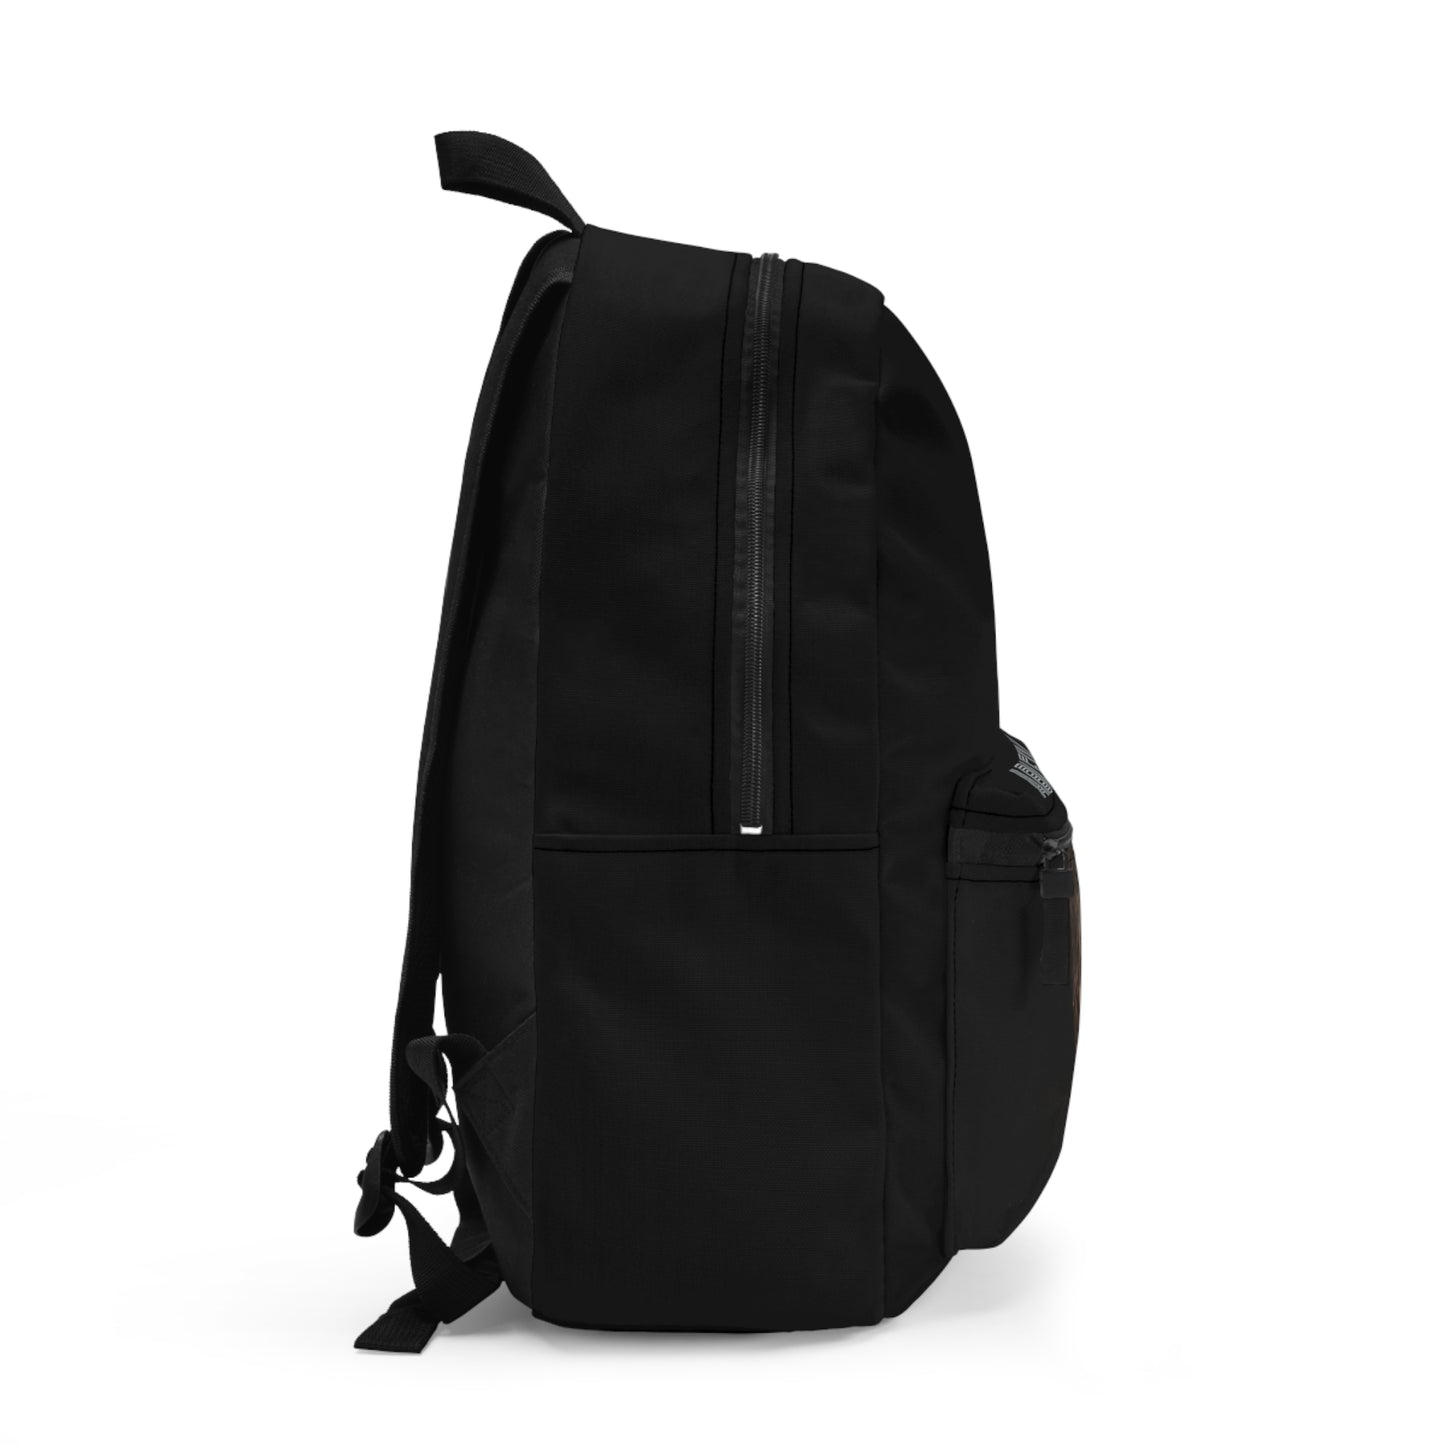 Ableiva - Black Backpack